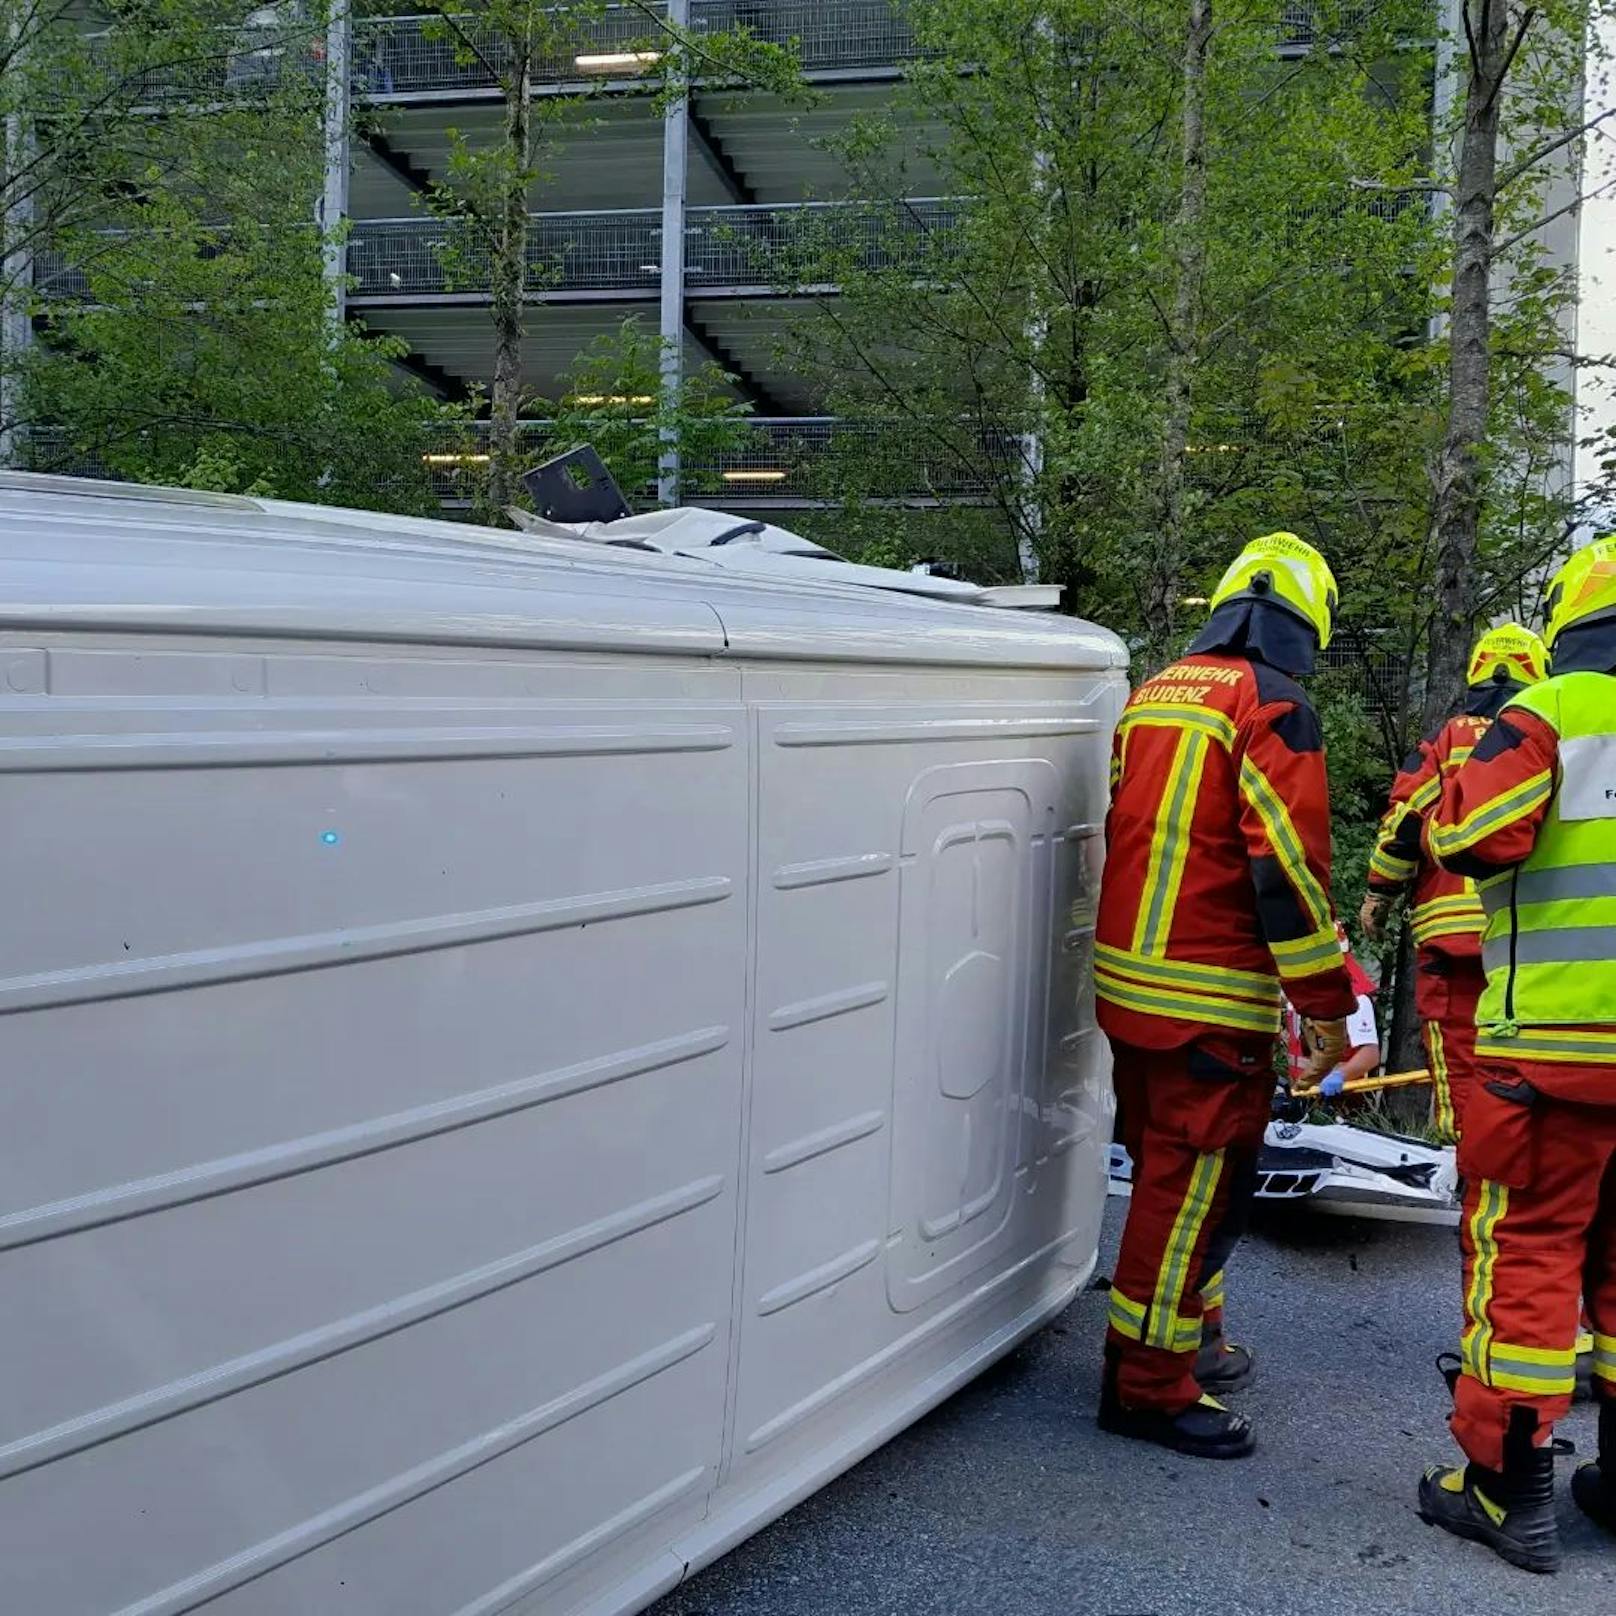 Der 25-Jährige wurde mit schweren Verletzungen mit dem Rettungshubschrauber C8 in das Krankenhaus St. Gallen geflogen, der 31-Jährige erlag noch am Unfallort seinen schweren Verletzungen. Die 29-jährige Beifahrerin und der 30-jährige Lkw-Fahrer wurden mit jeweils leichten Verletzungen in die Krankenhäuser Bludenz und Feldkirch eingeliefert.